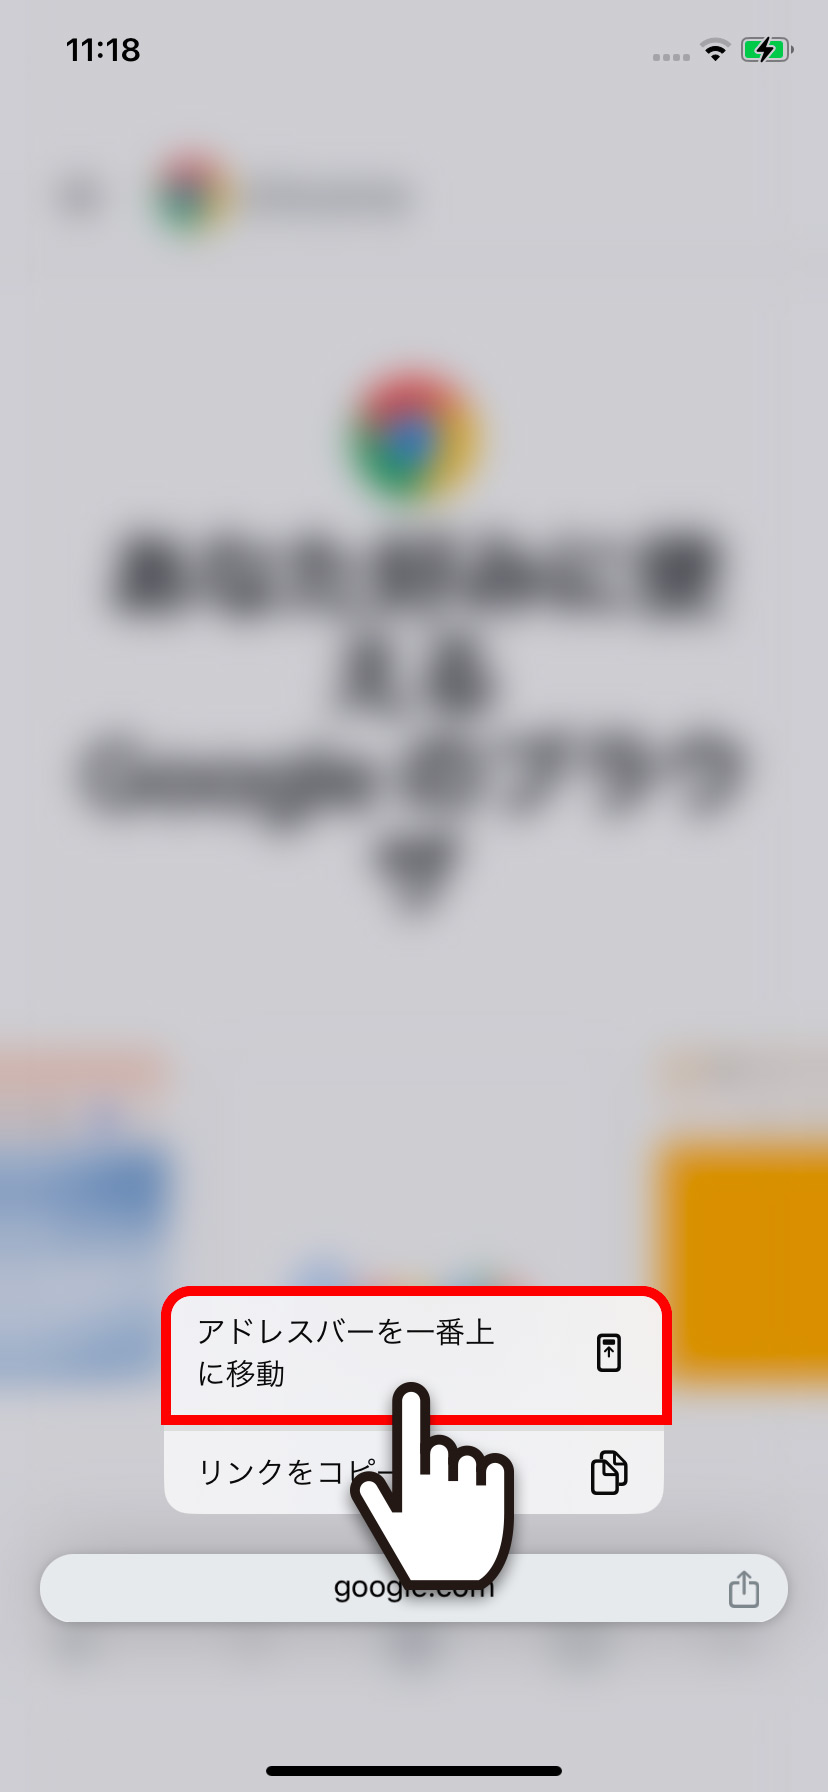 【iPhone】Google Chromeのアドレスバーの位置を変更する